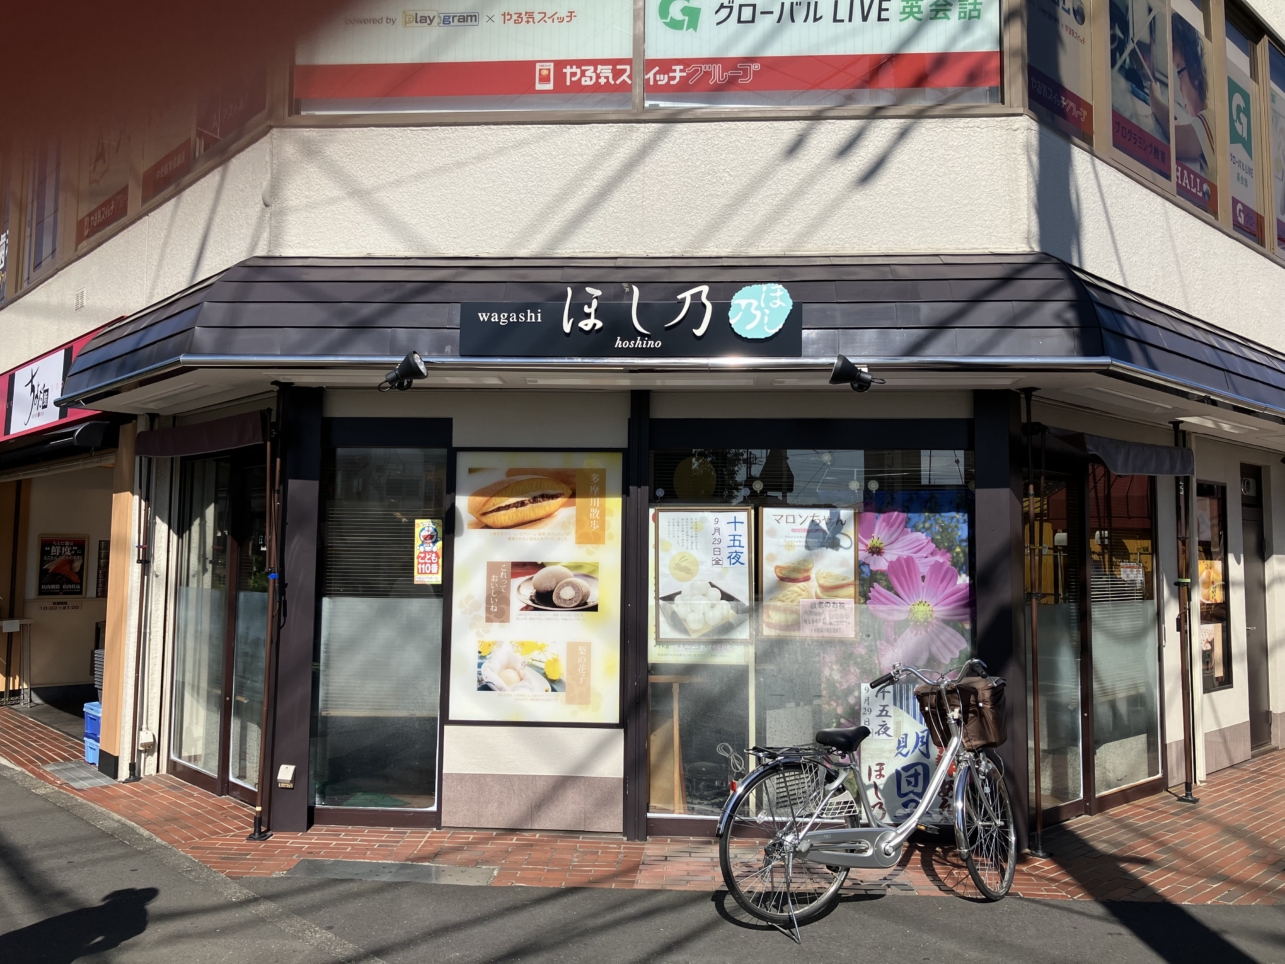 中野島と言えば『ほし乃』と言われるほどの老舗和菓子店【ほし乃】